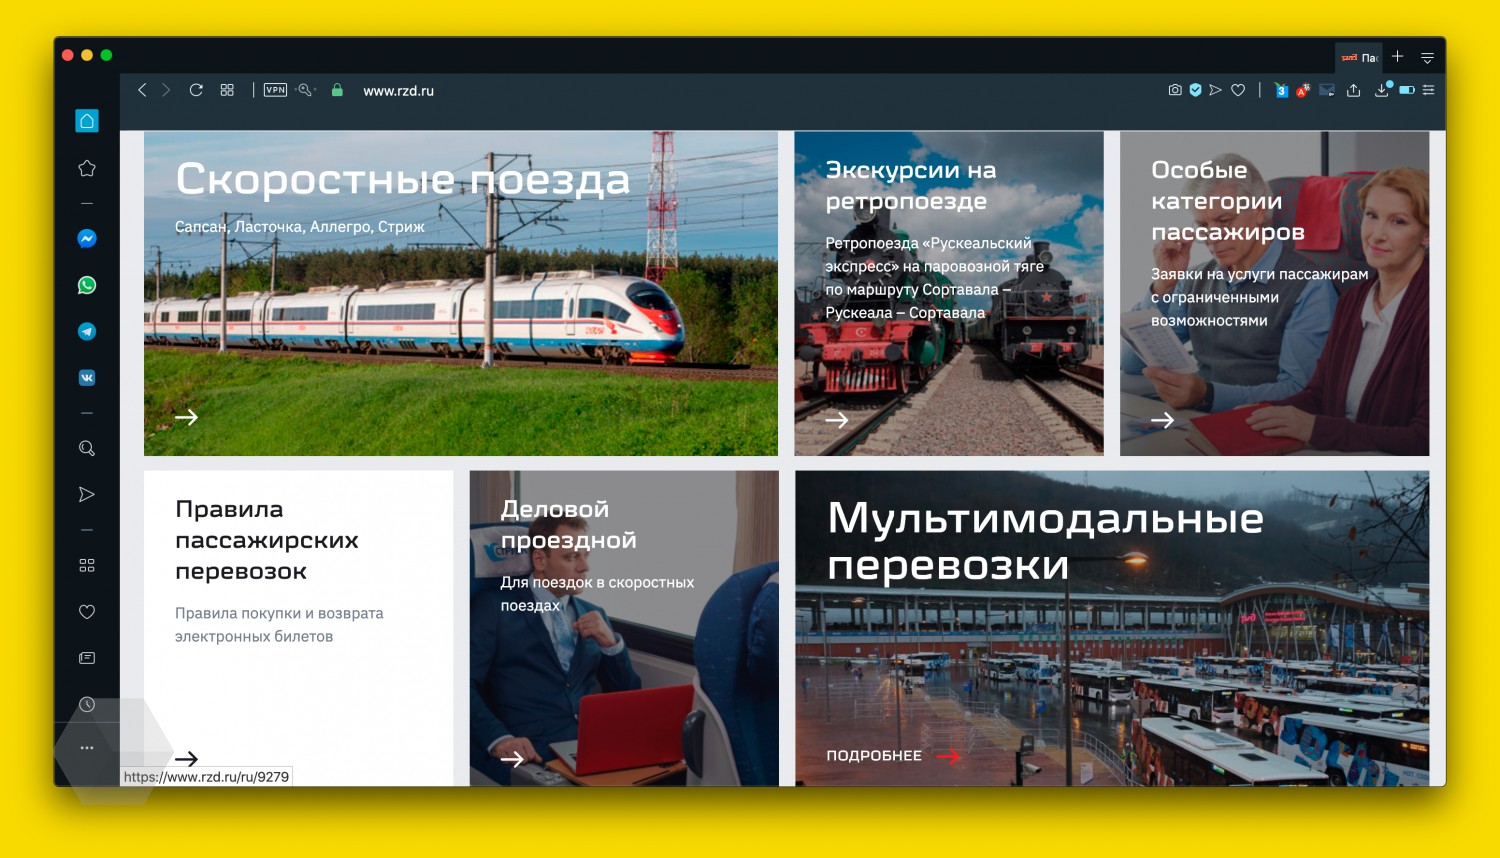 РЖД представили новый сайт с поиском авиабилетов и маршрутов с пересадкой